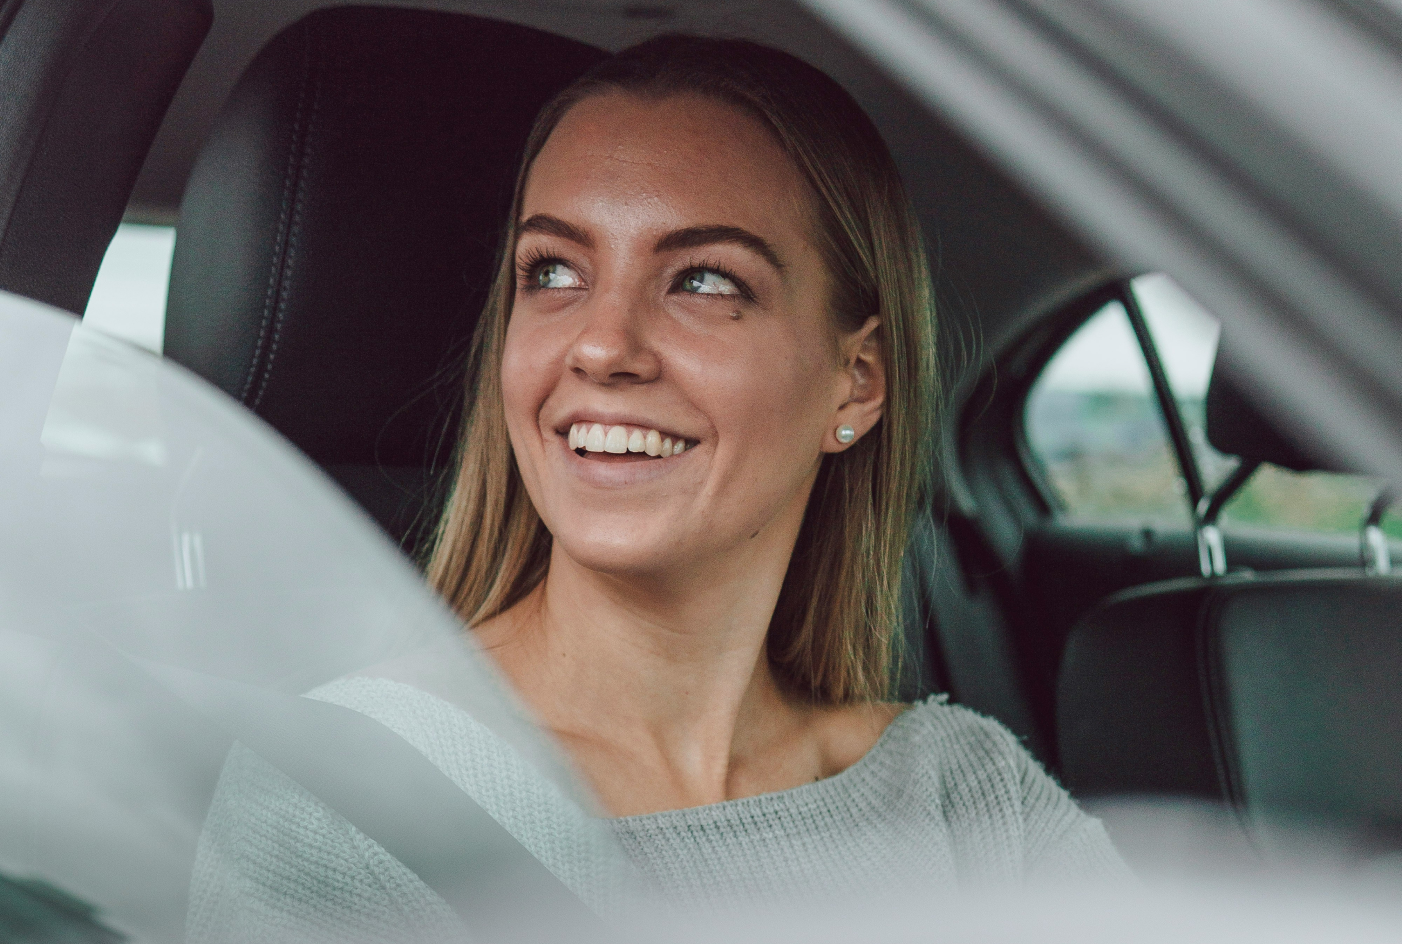 Närbild på en blond, ung kvinna som sitter i en bil och tittar ut genom fönstret medan hon ler.